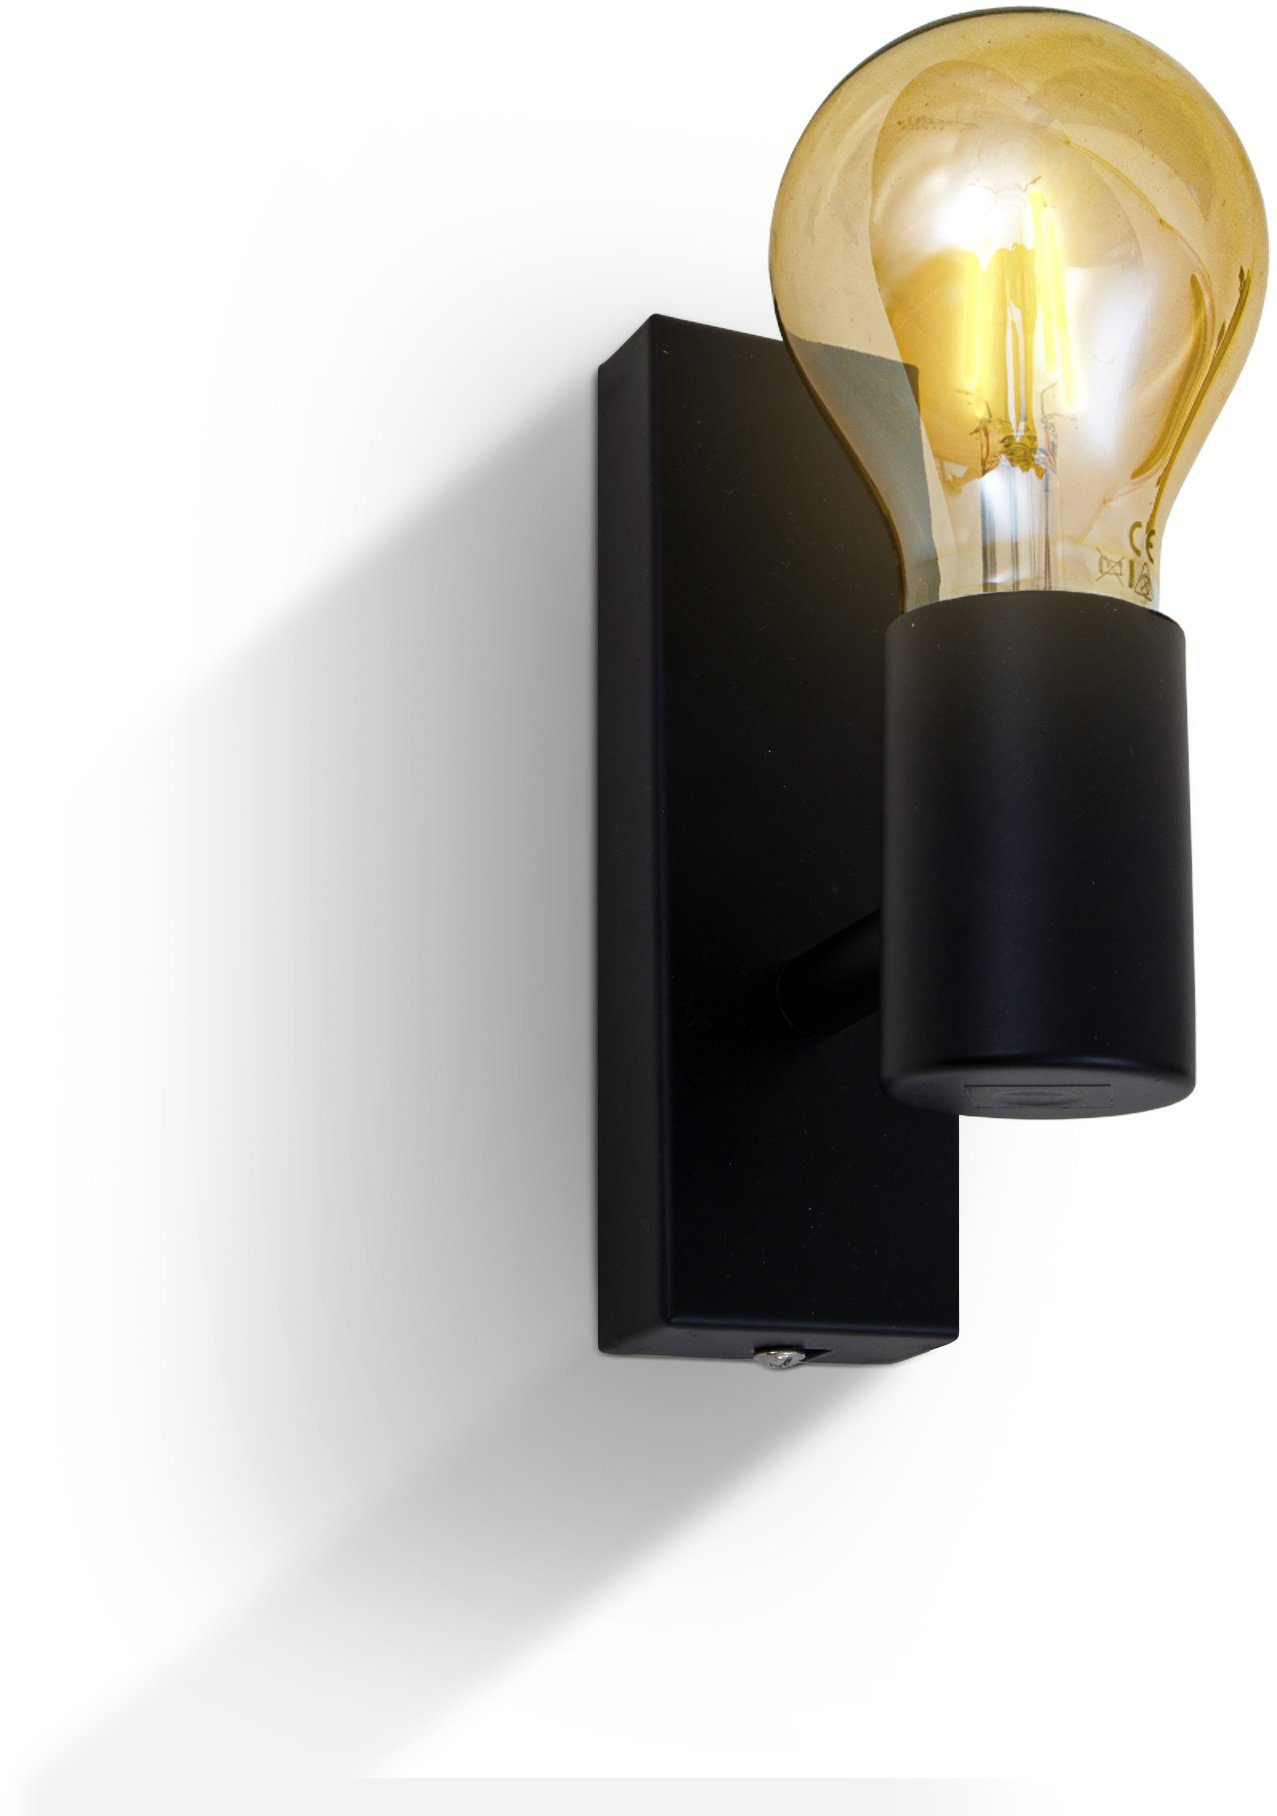 E27 Wandlampe Retro Flur wechselbar, Industrie Vintage LED Leuchtmittel Warmweiß, Wandspot matt Wohnzimmer B.K.Licht Wandleuchte,